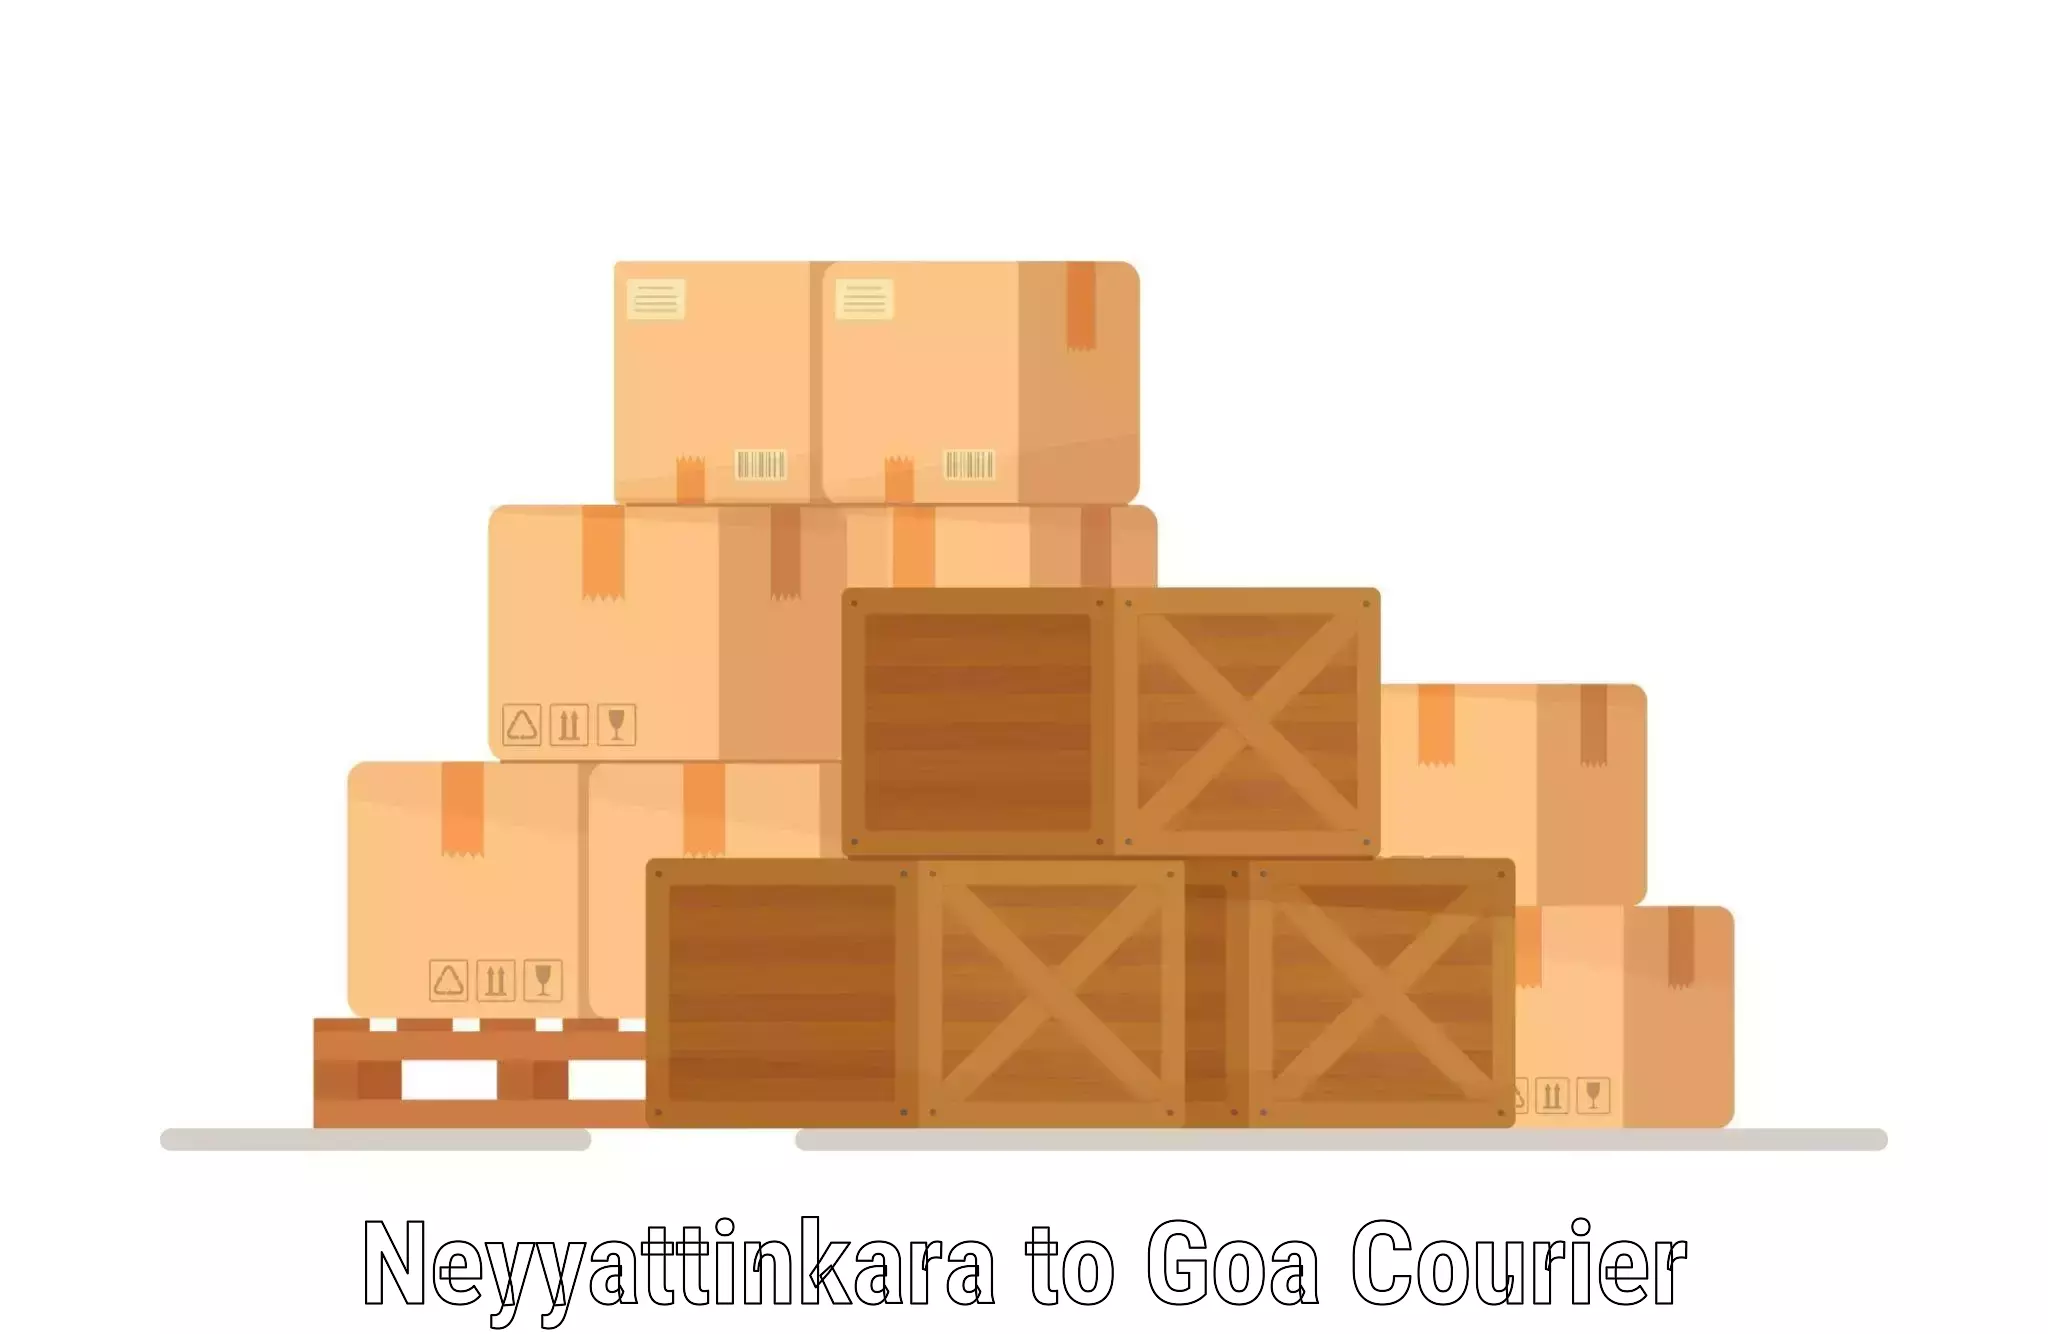 Customizable shipping options Neyyattinkara to Vasco da Gama